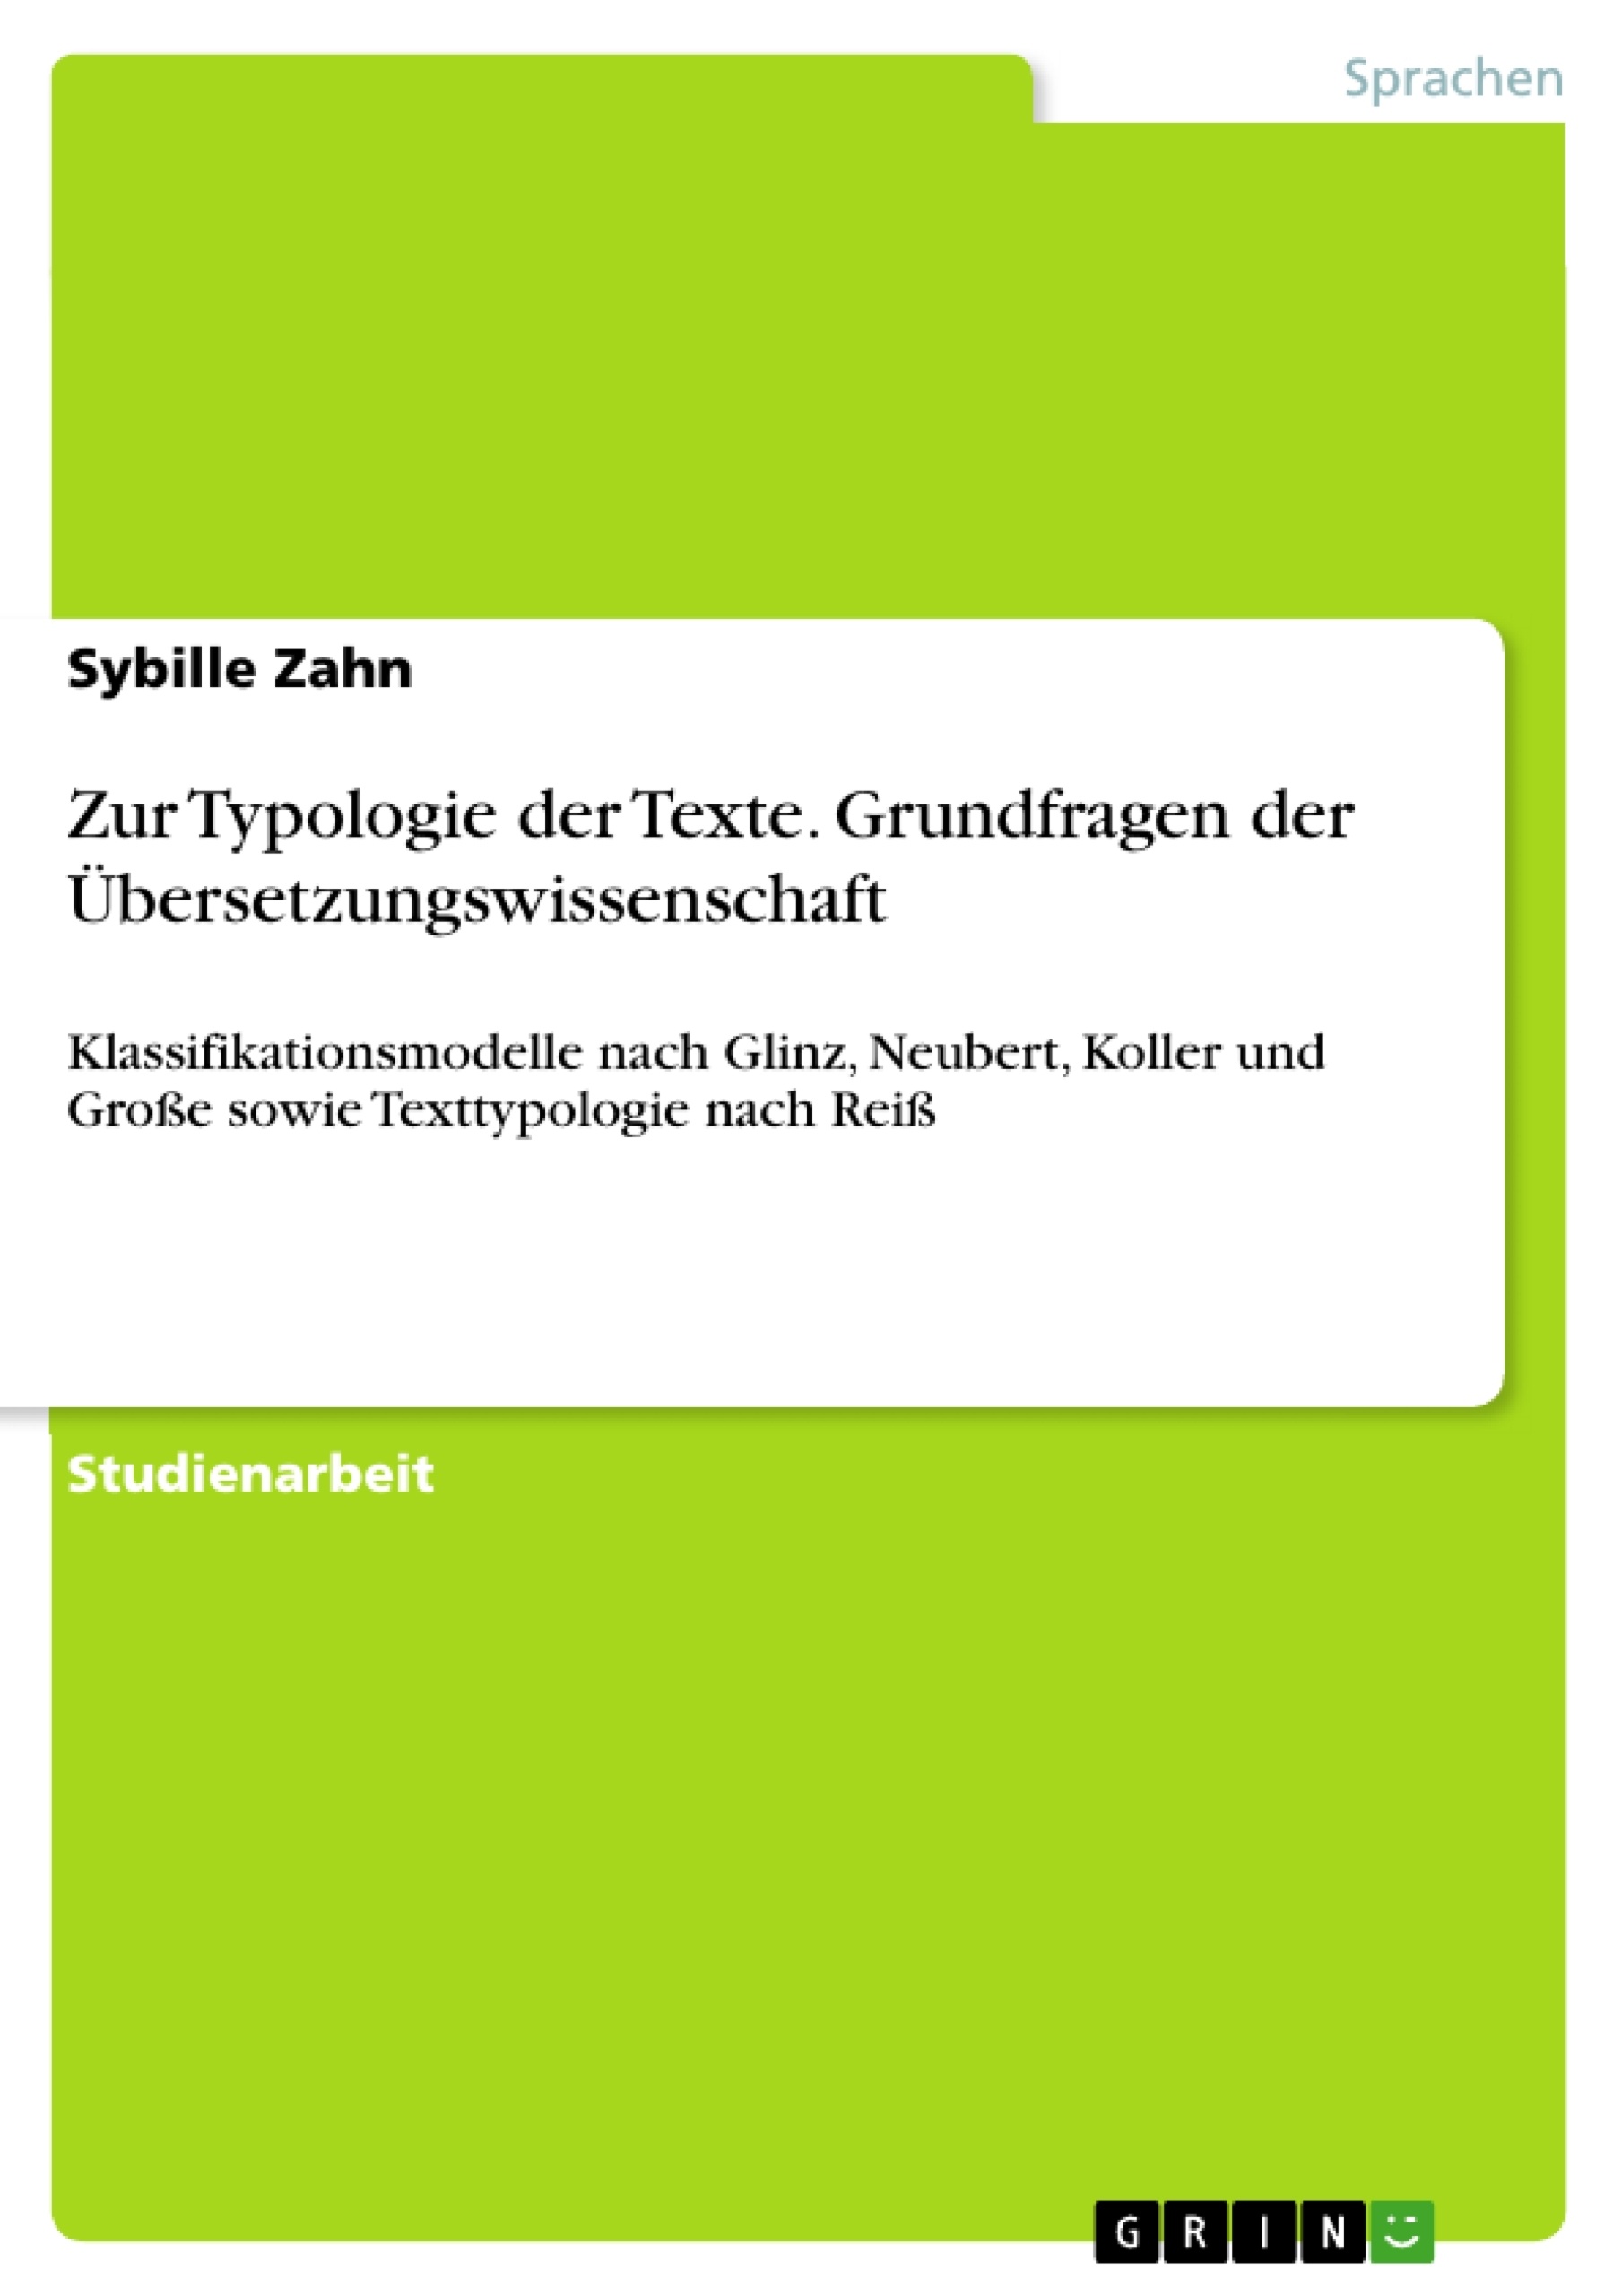 Title: Zur Typologie der Texte. Grundfragen der Übersetzungswissenschaft